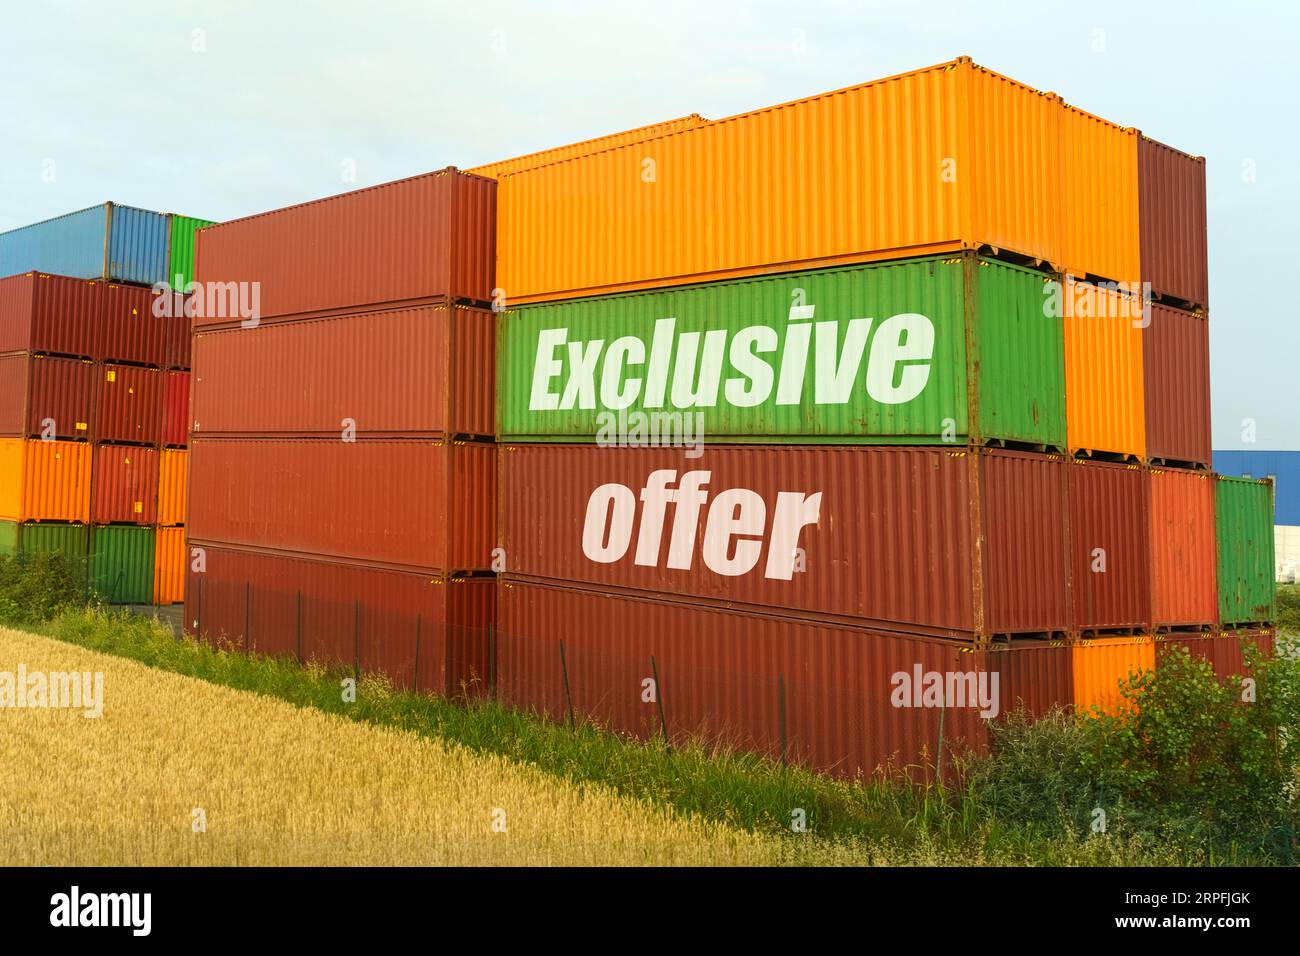 Concetto aziendale. Sui contenitori colorati per il trasporto di merci, l'iscrizione - offerta esclusiva Foto Stock